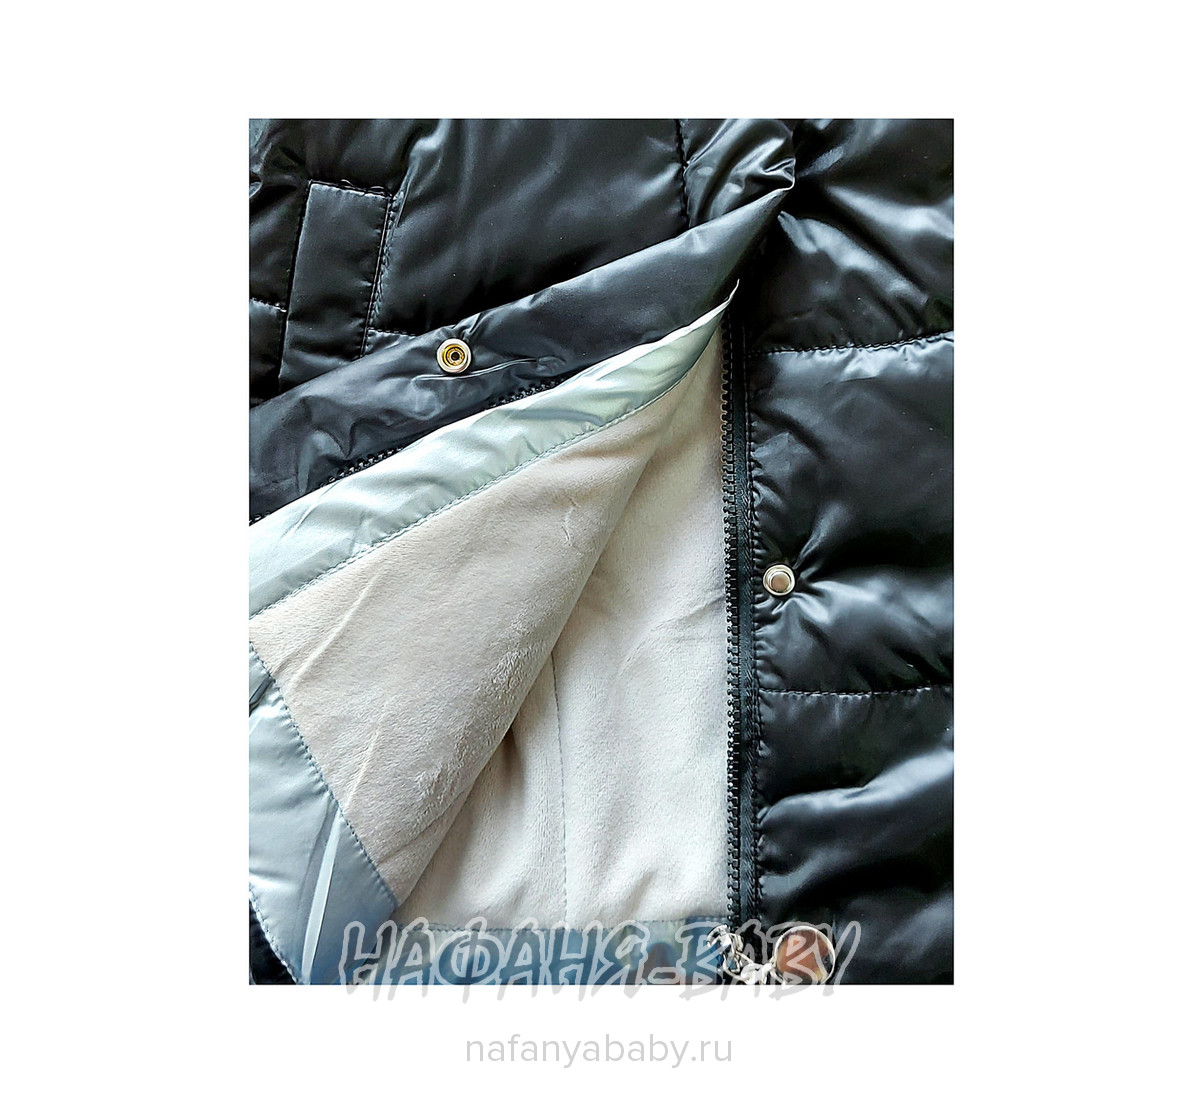 Зимняя удлиненная куртка DELFIN-FREE арт: 2207, 1-4 года, 5-9 лет, цвет черный, оптом Китай (Пекин)